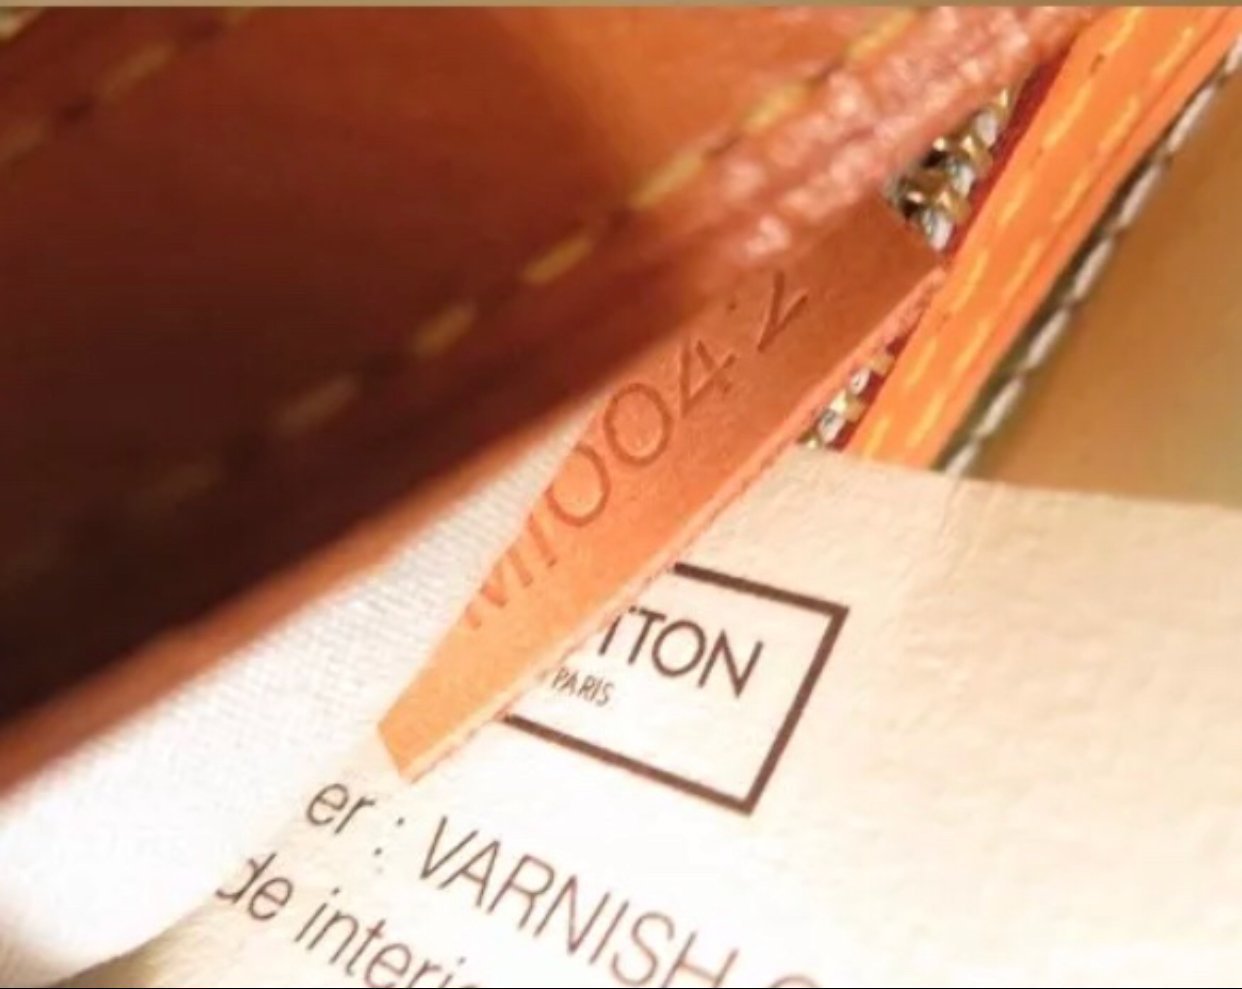 Louis Vuitton Beige Monogram Vernis Reade PM QJB0D3MQIF004